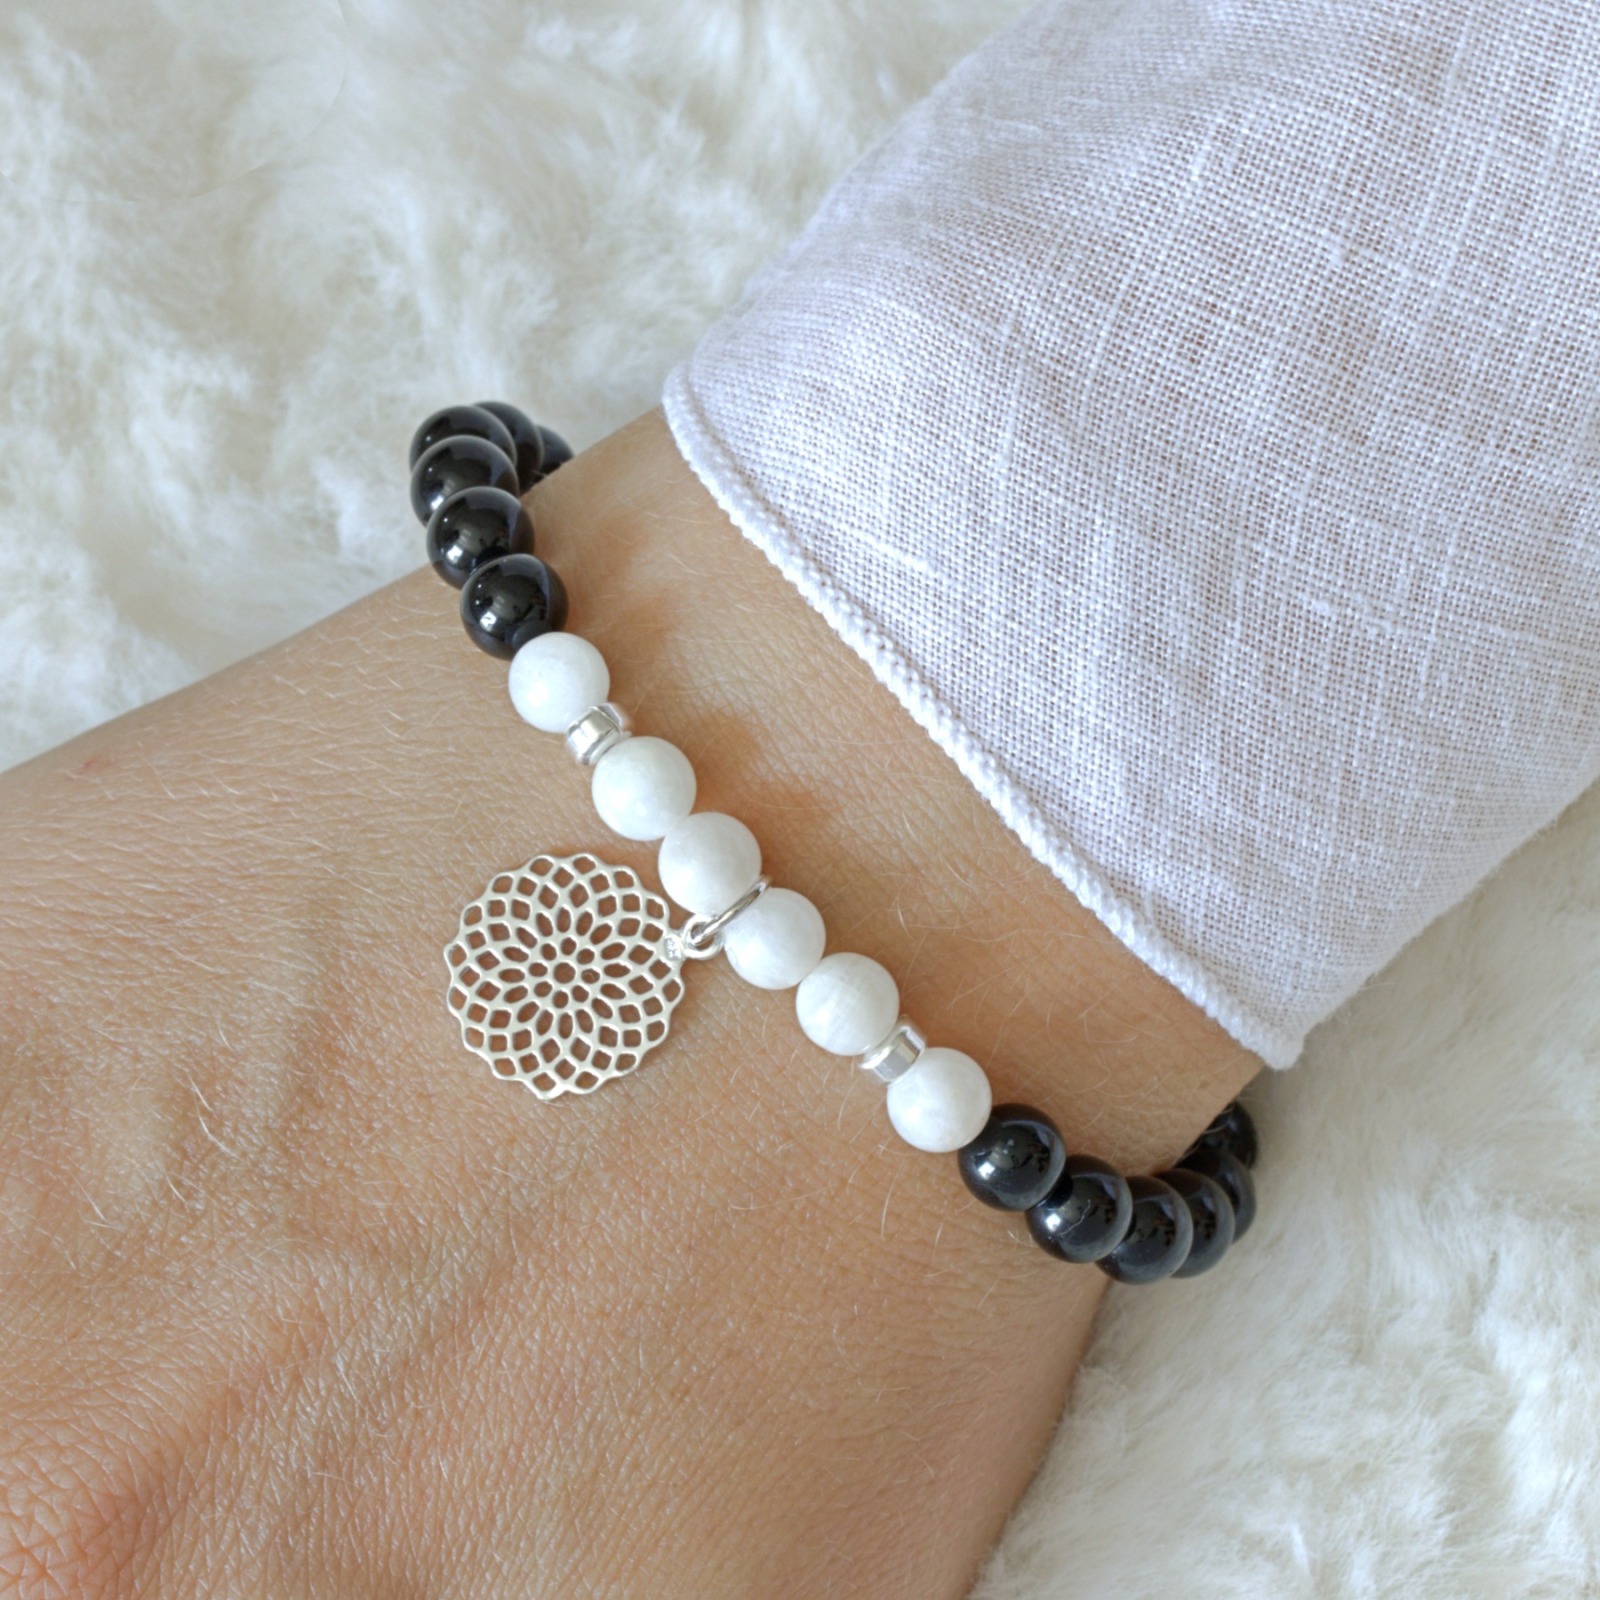 Schwarzer Turmalin Armband, Schörl-Armband mit weißem Mondstein und Mandala, 925er Silber oder